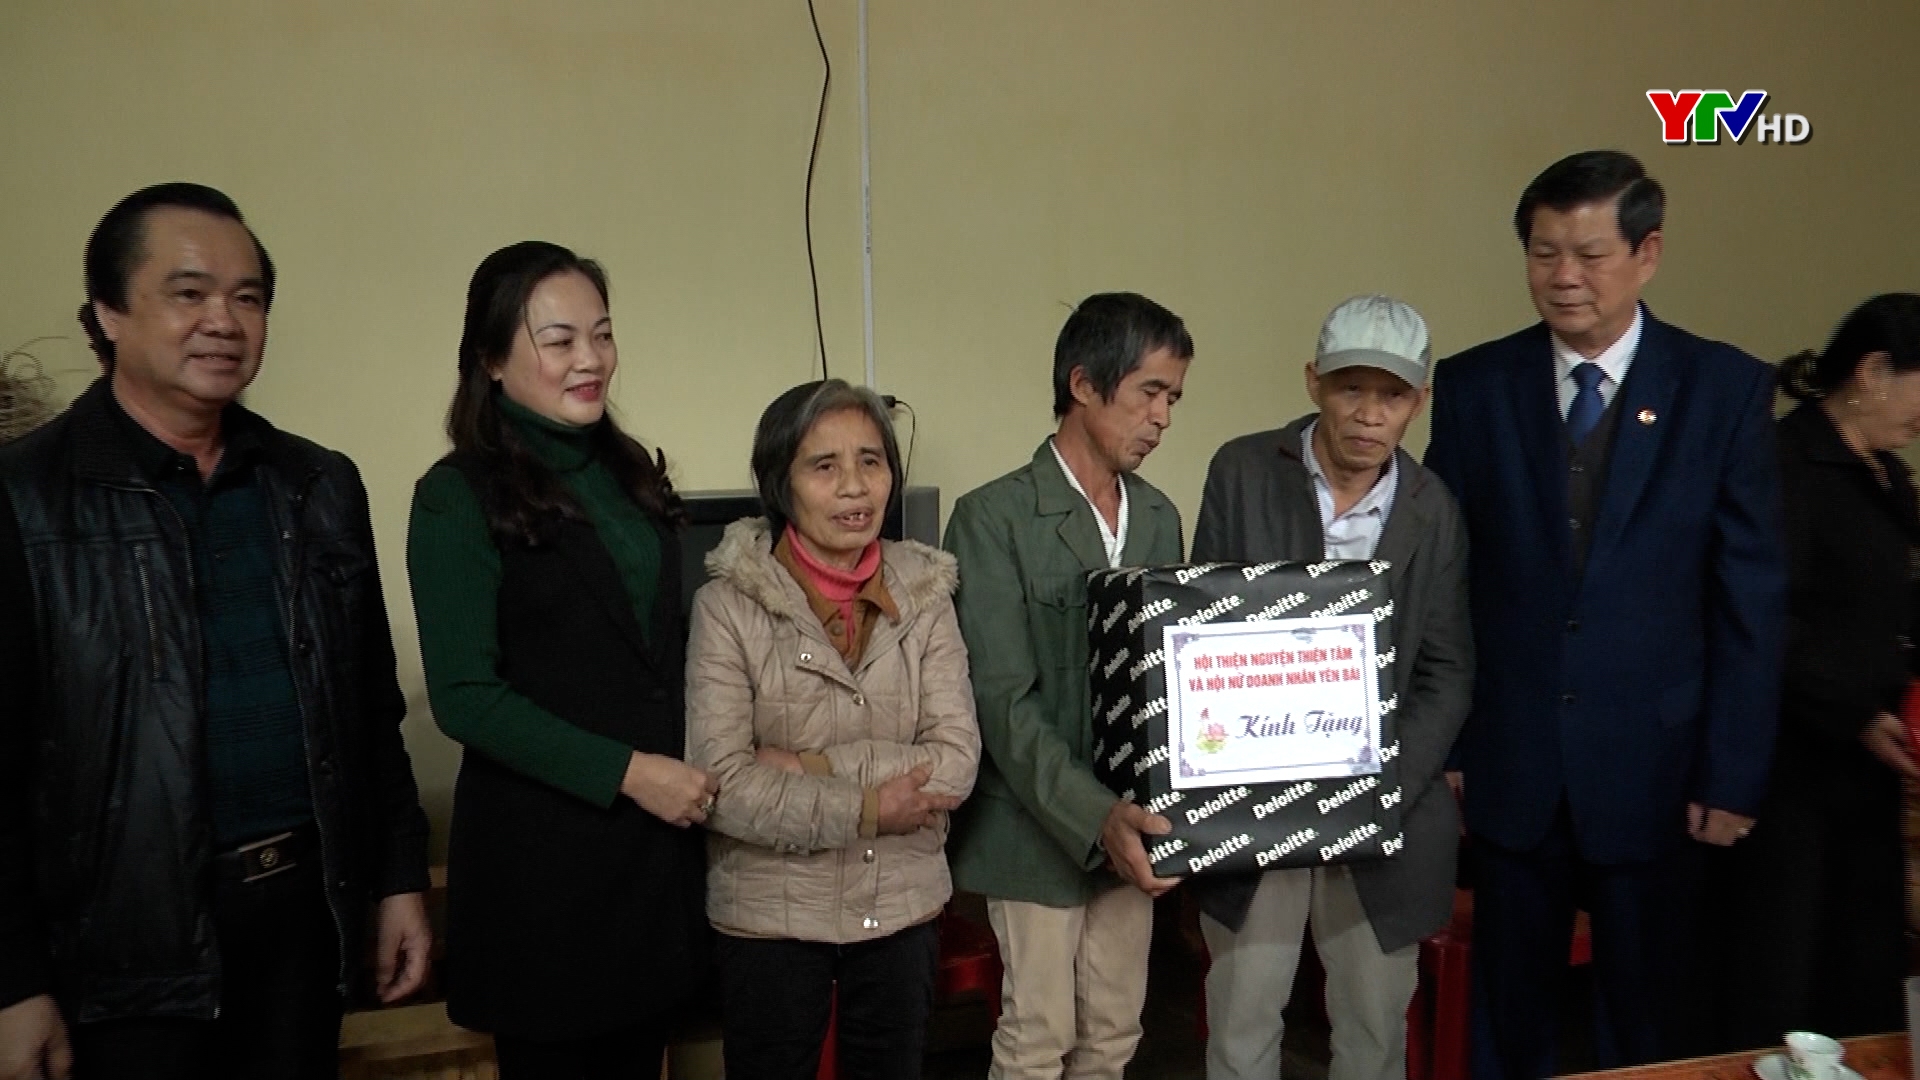 Hiệp hội Doanh nghiệp tỉnh Yên Bái trao kinh phí làm nhà nhân ái cho hộ nghèo